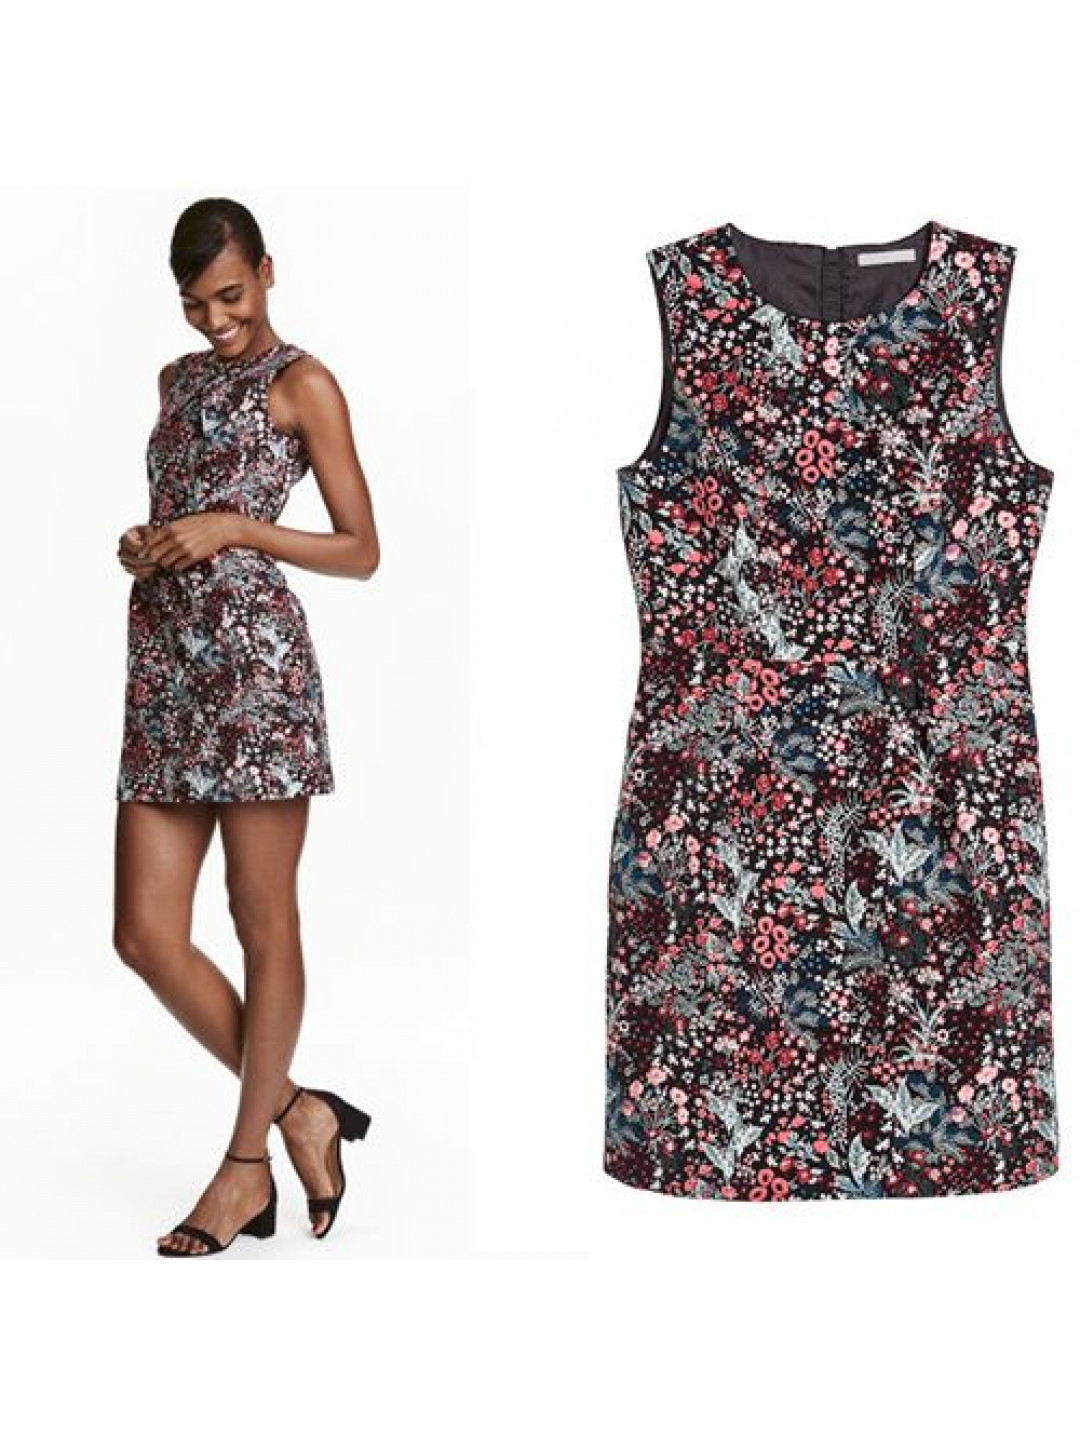 NEW H&M WOMEN'S JACQUARD WEAVE DRESS | FLORAL